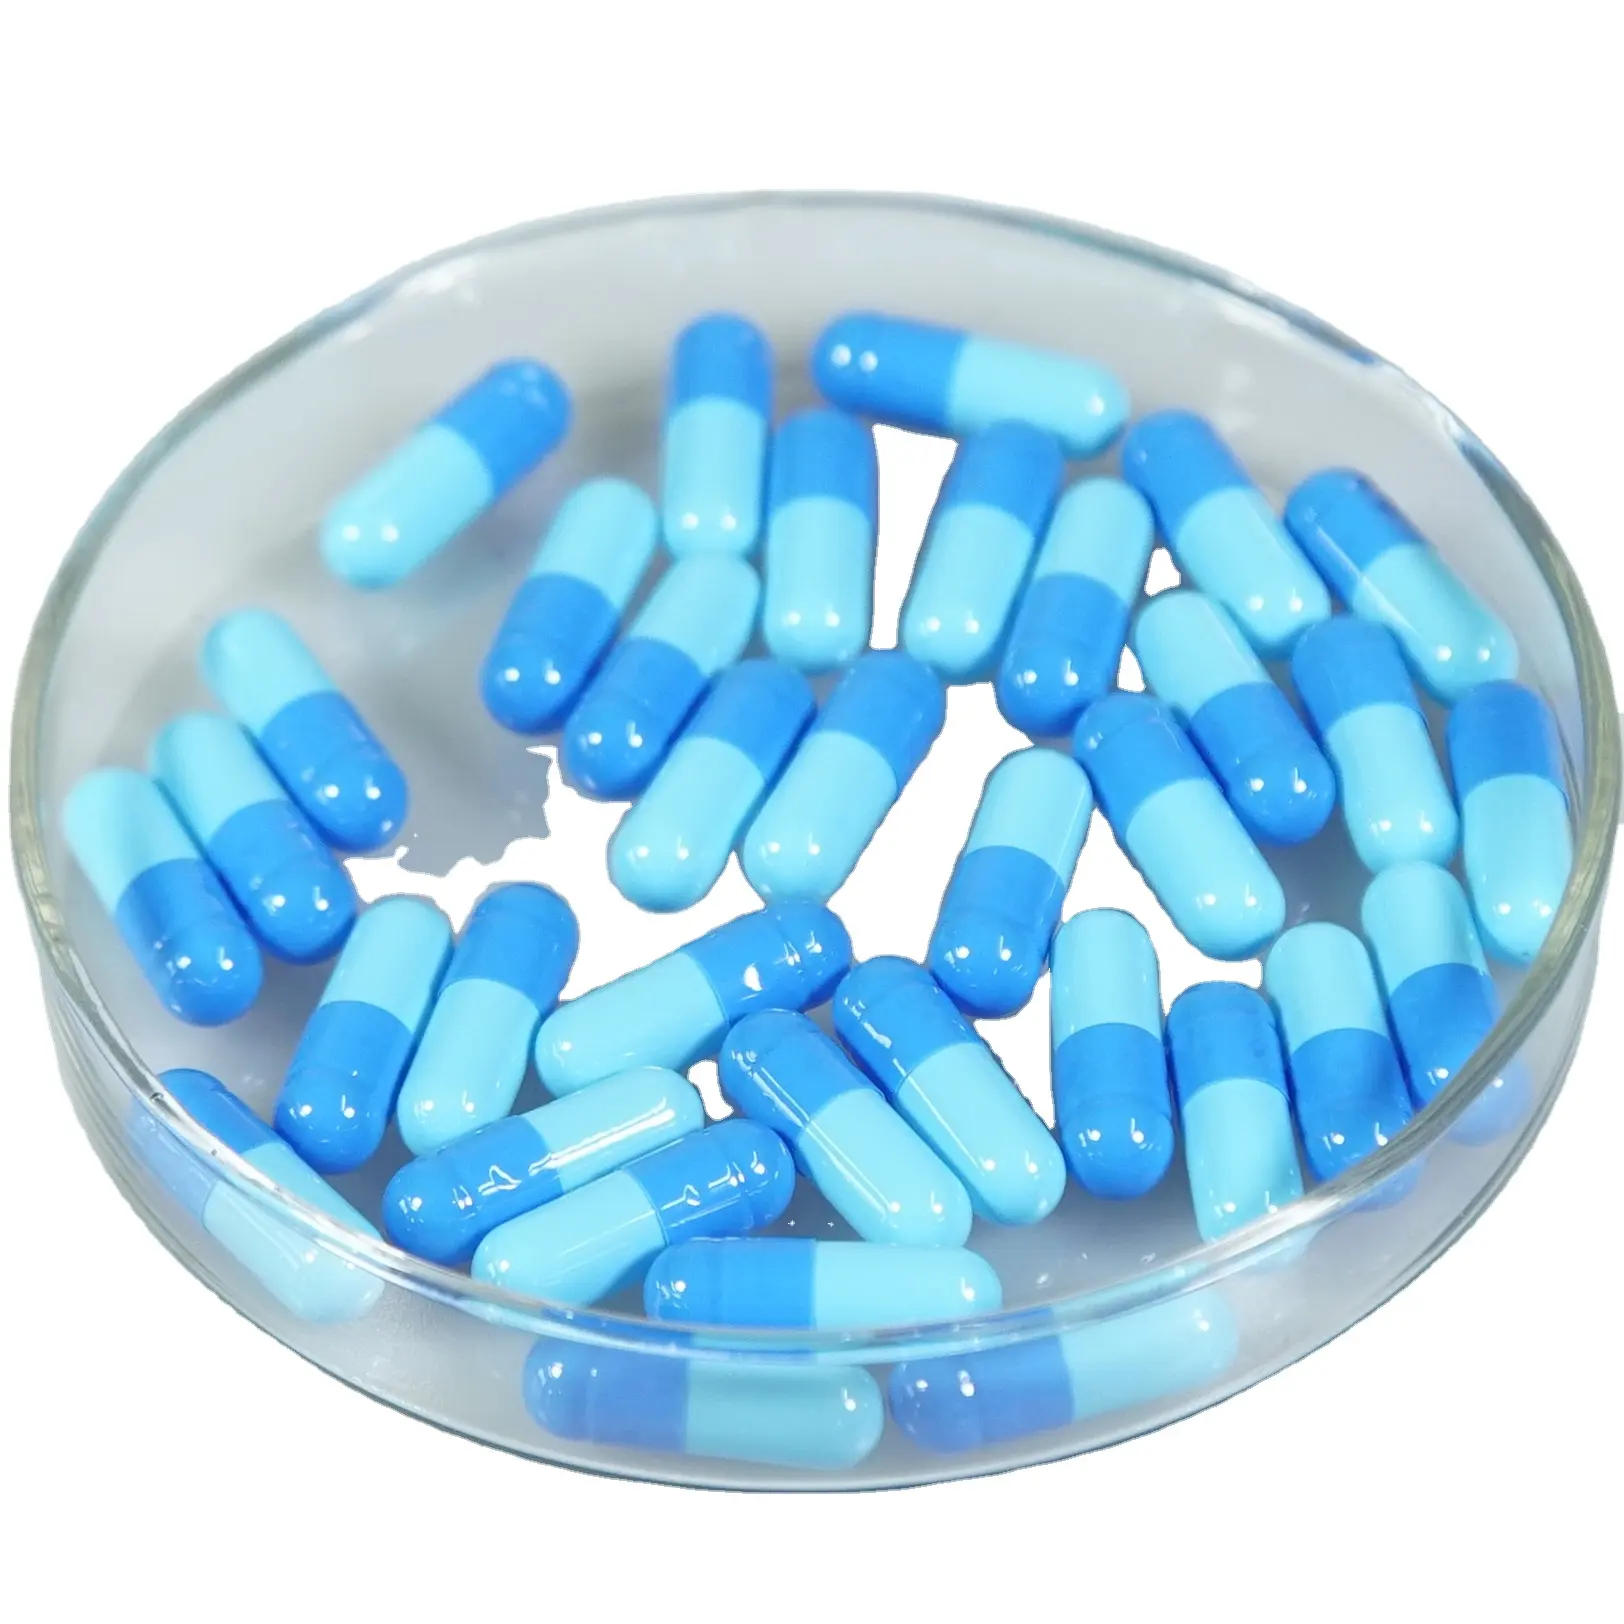 Cápsulas redondas de gelatina dura vacías personalizadas # JP Pharmaceutical, 1000 unidades por bolsa, tamaño 0 00 cápsulas